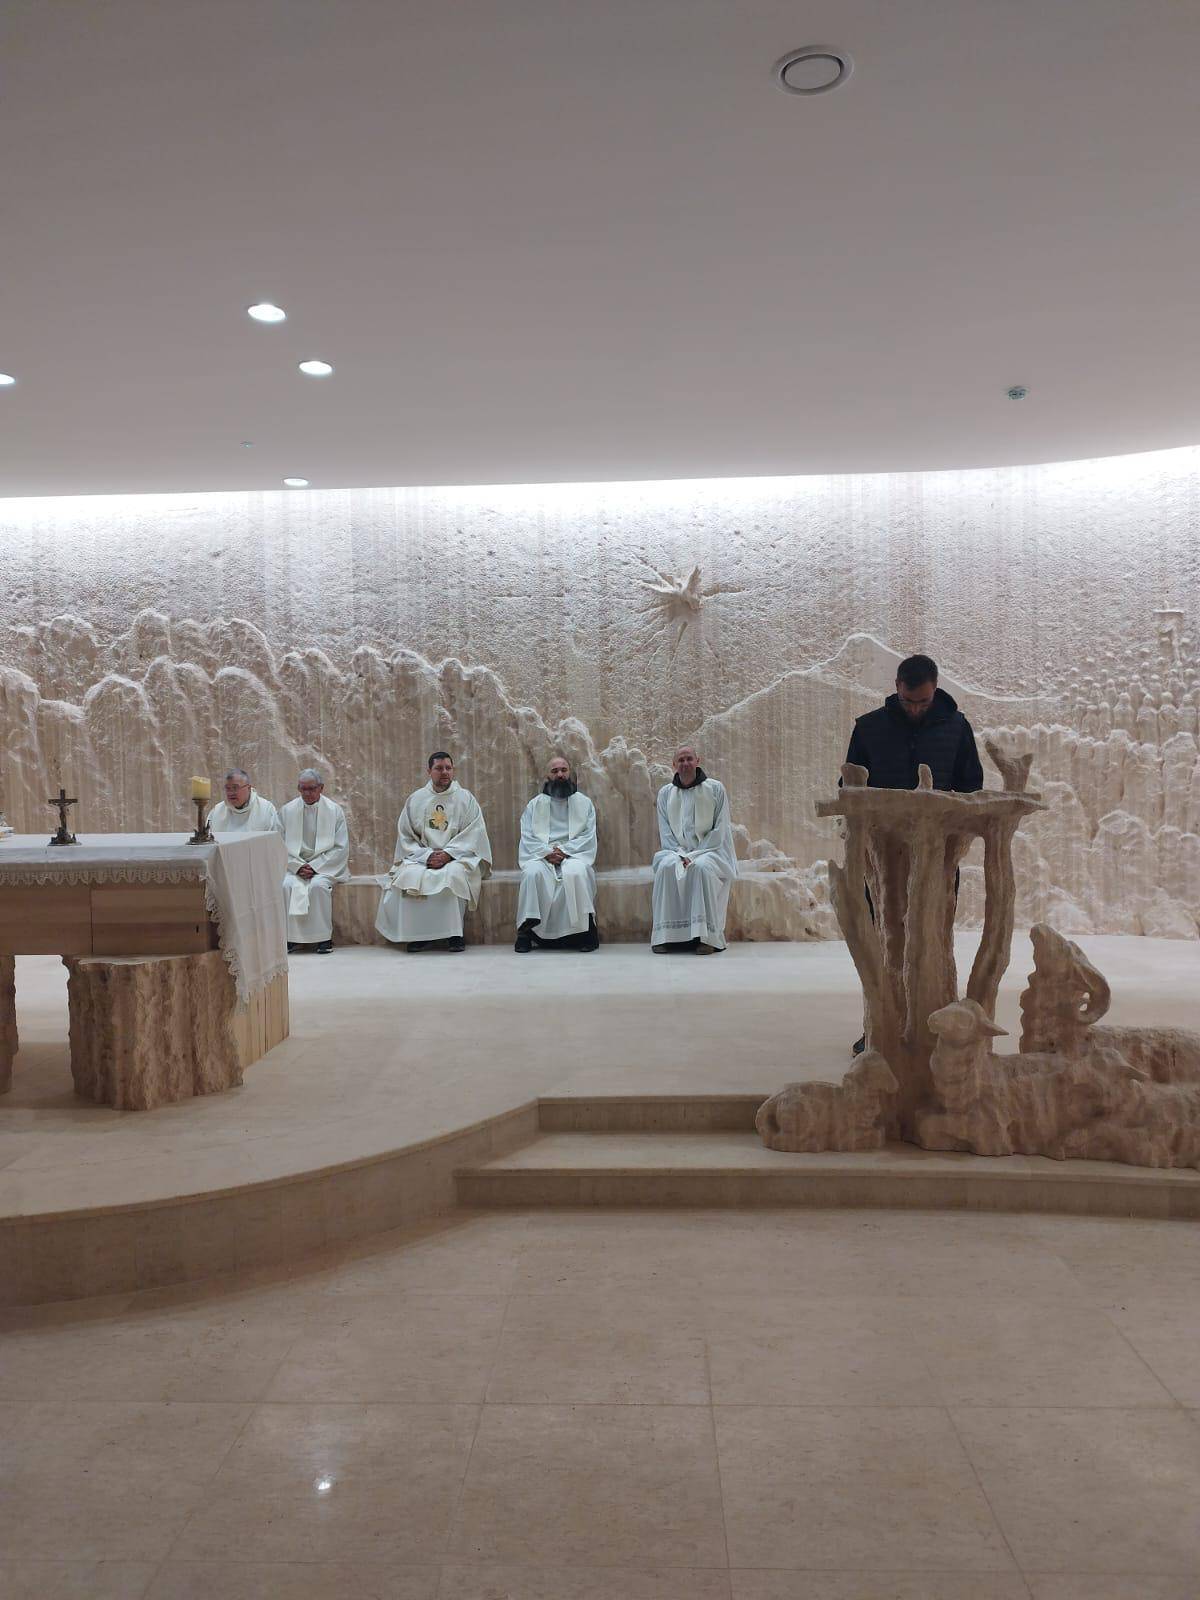 Hrvatska kapelica u Betlehemu imat će 250 mjesta, očekuje se da će otvorenje biti u studenom